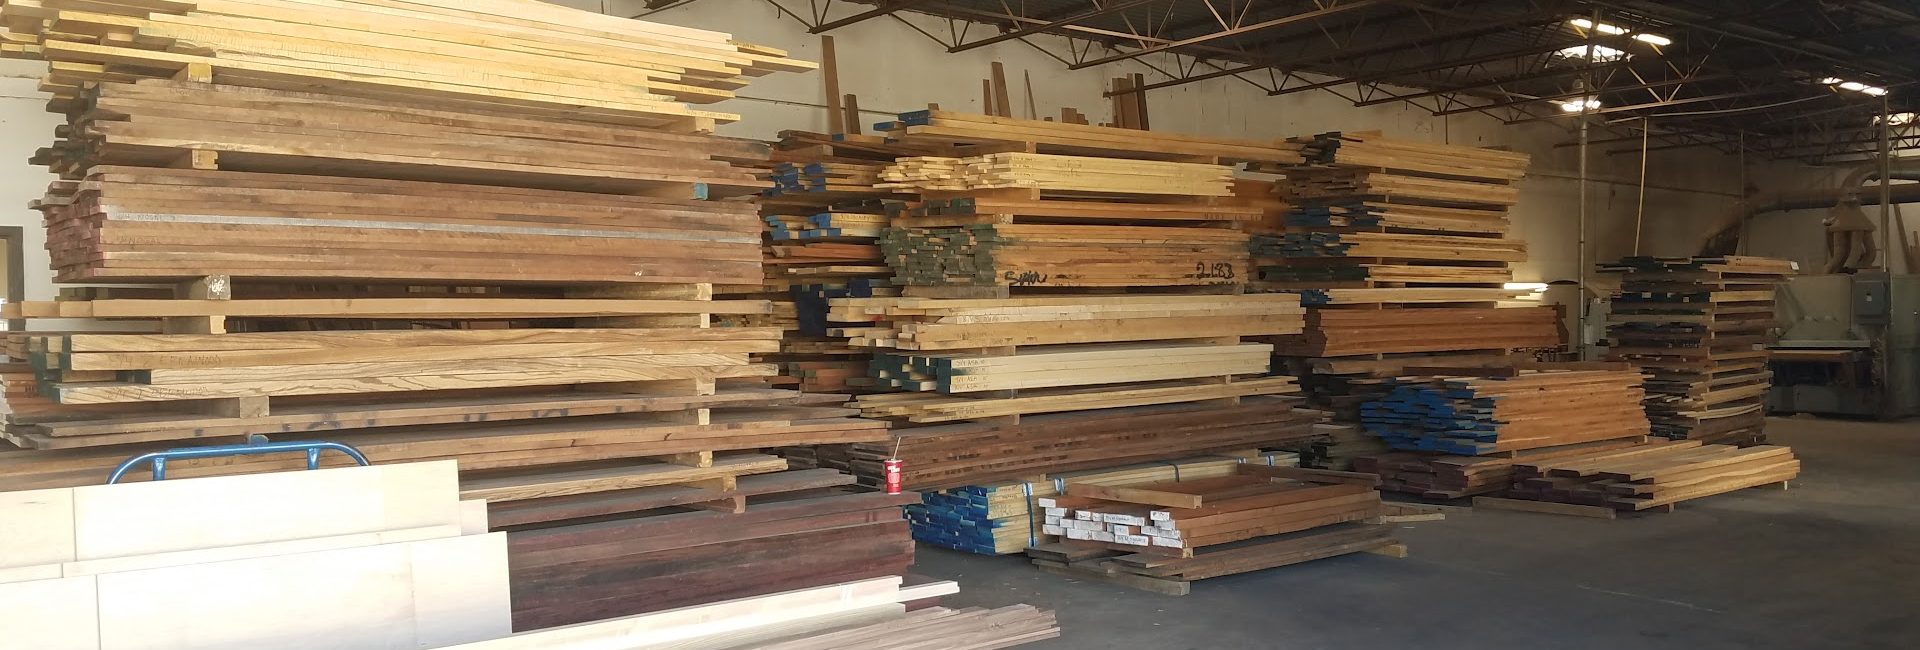 Hardwood Lumber Co 3